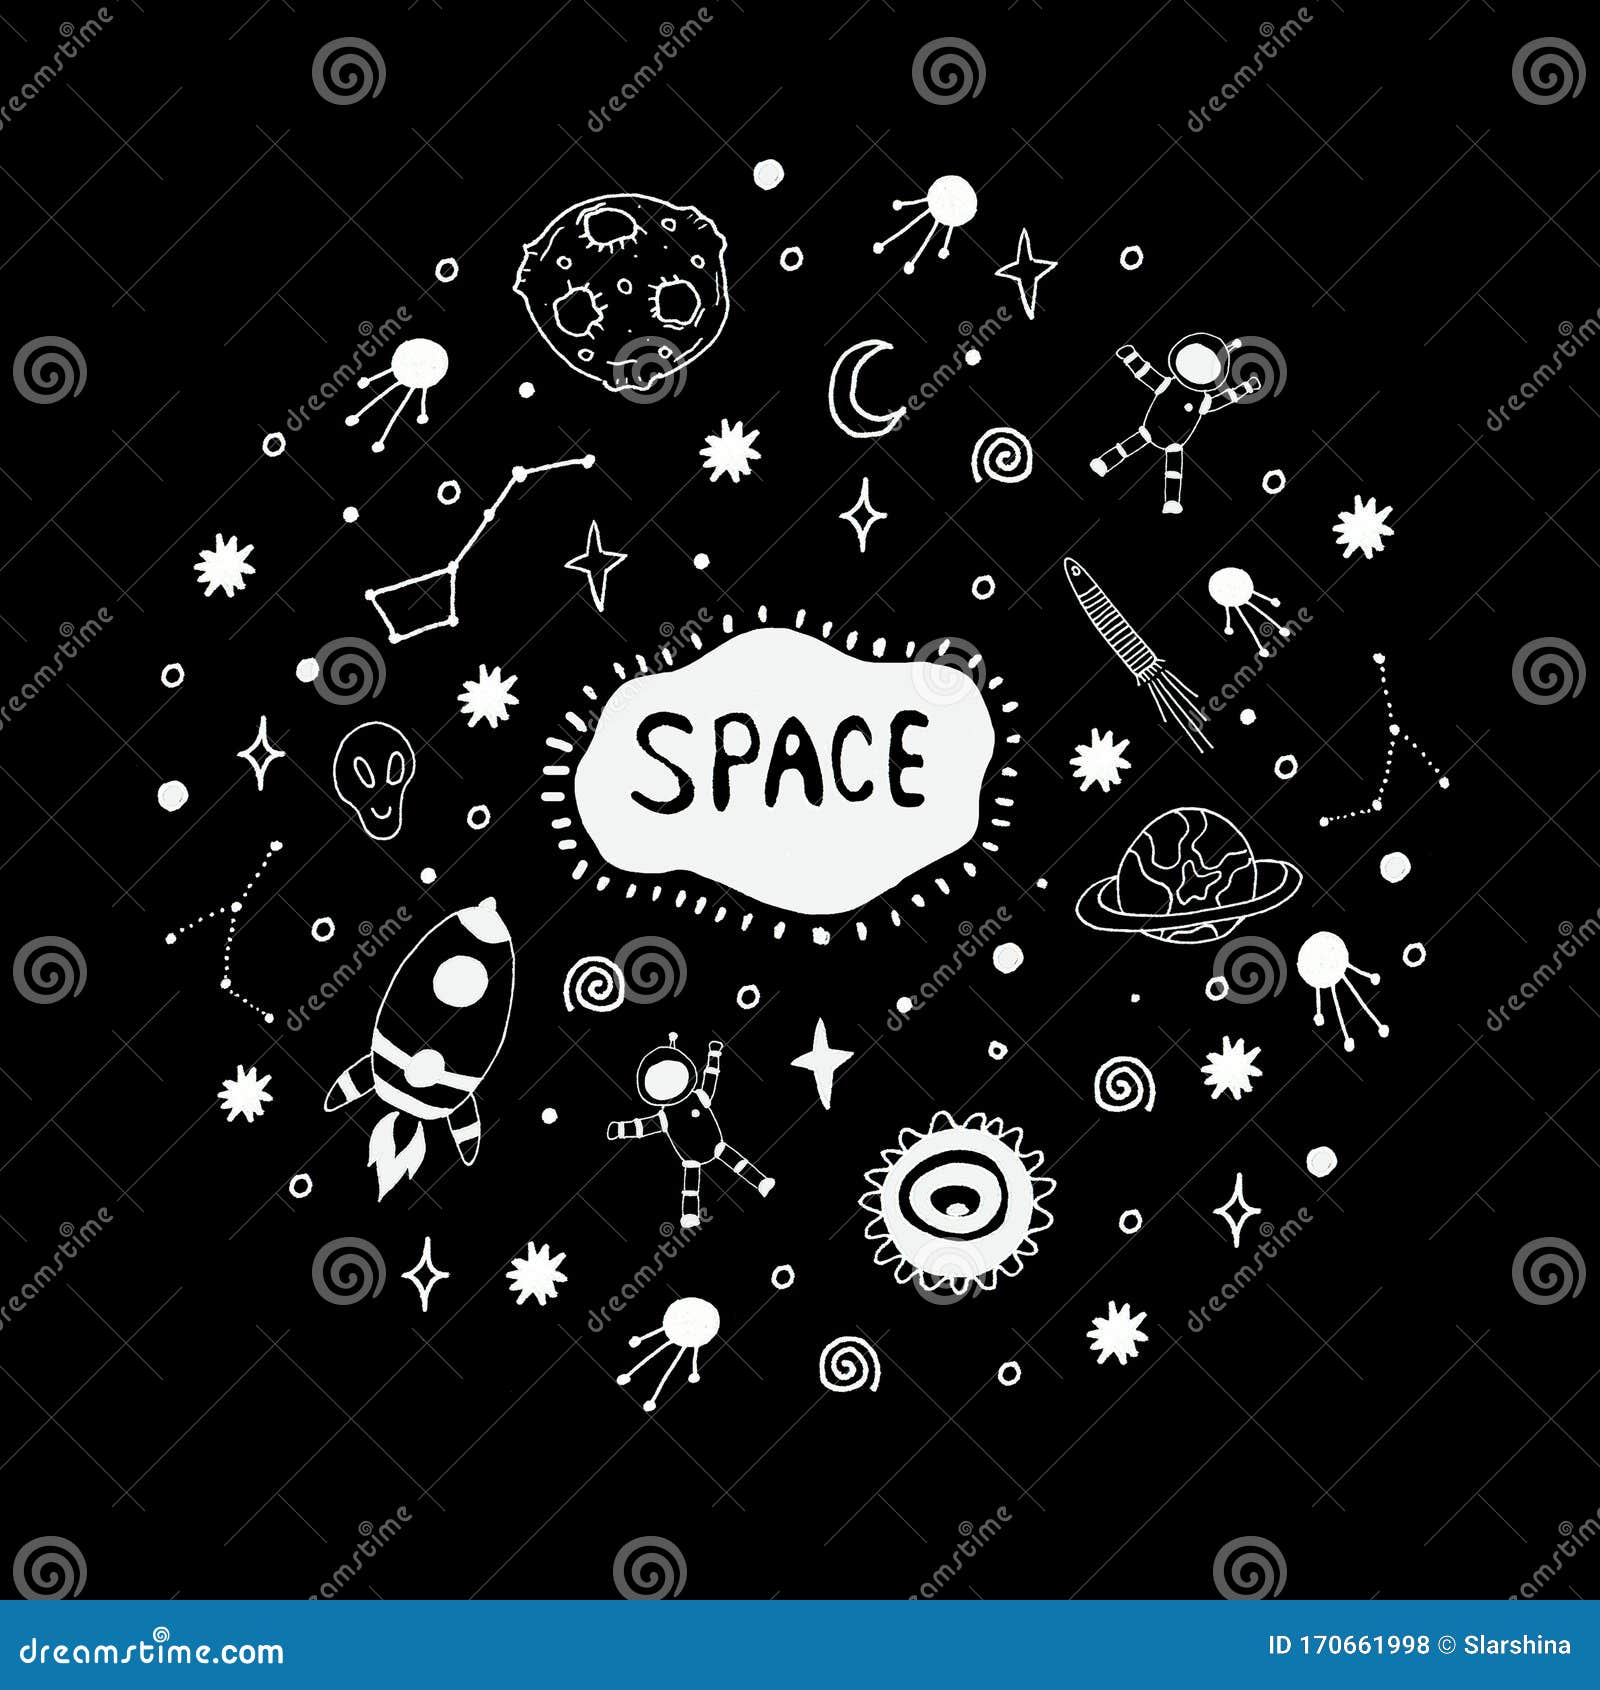 Bộ sưu tập về không gian và khoa học ngộ nghĩnh và dễ thương giúp bạn khám phá vô số bí ẩn trong vũ trụ và cảm nhận được sự tuyệt vời của khoa học.